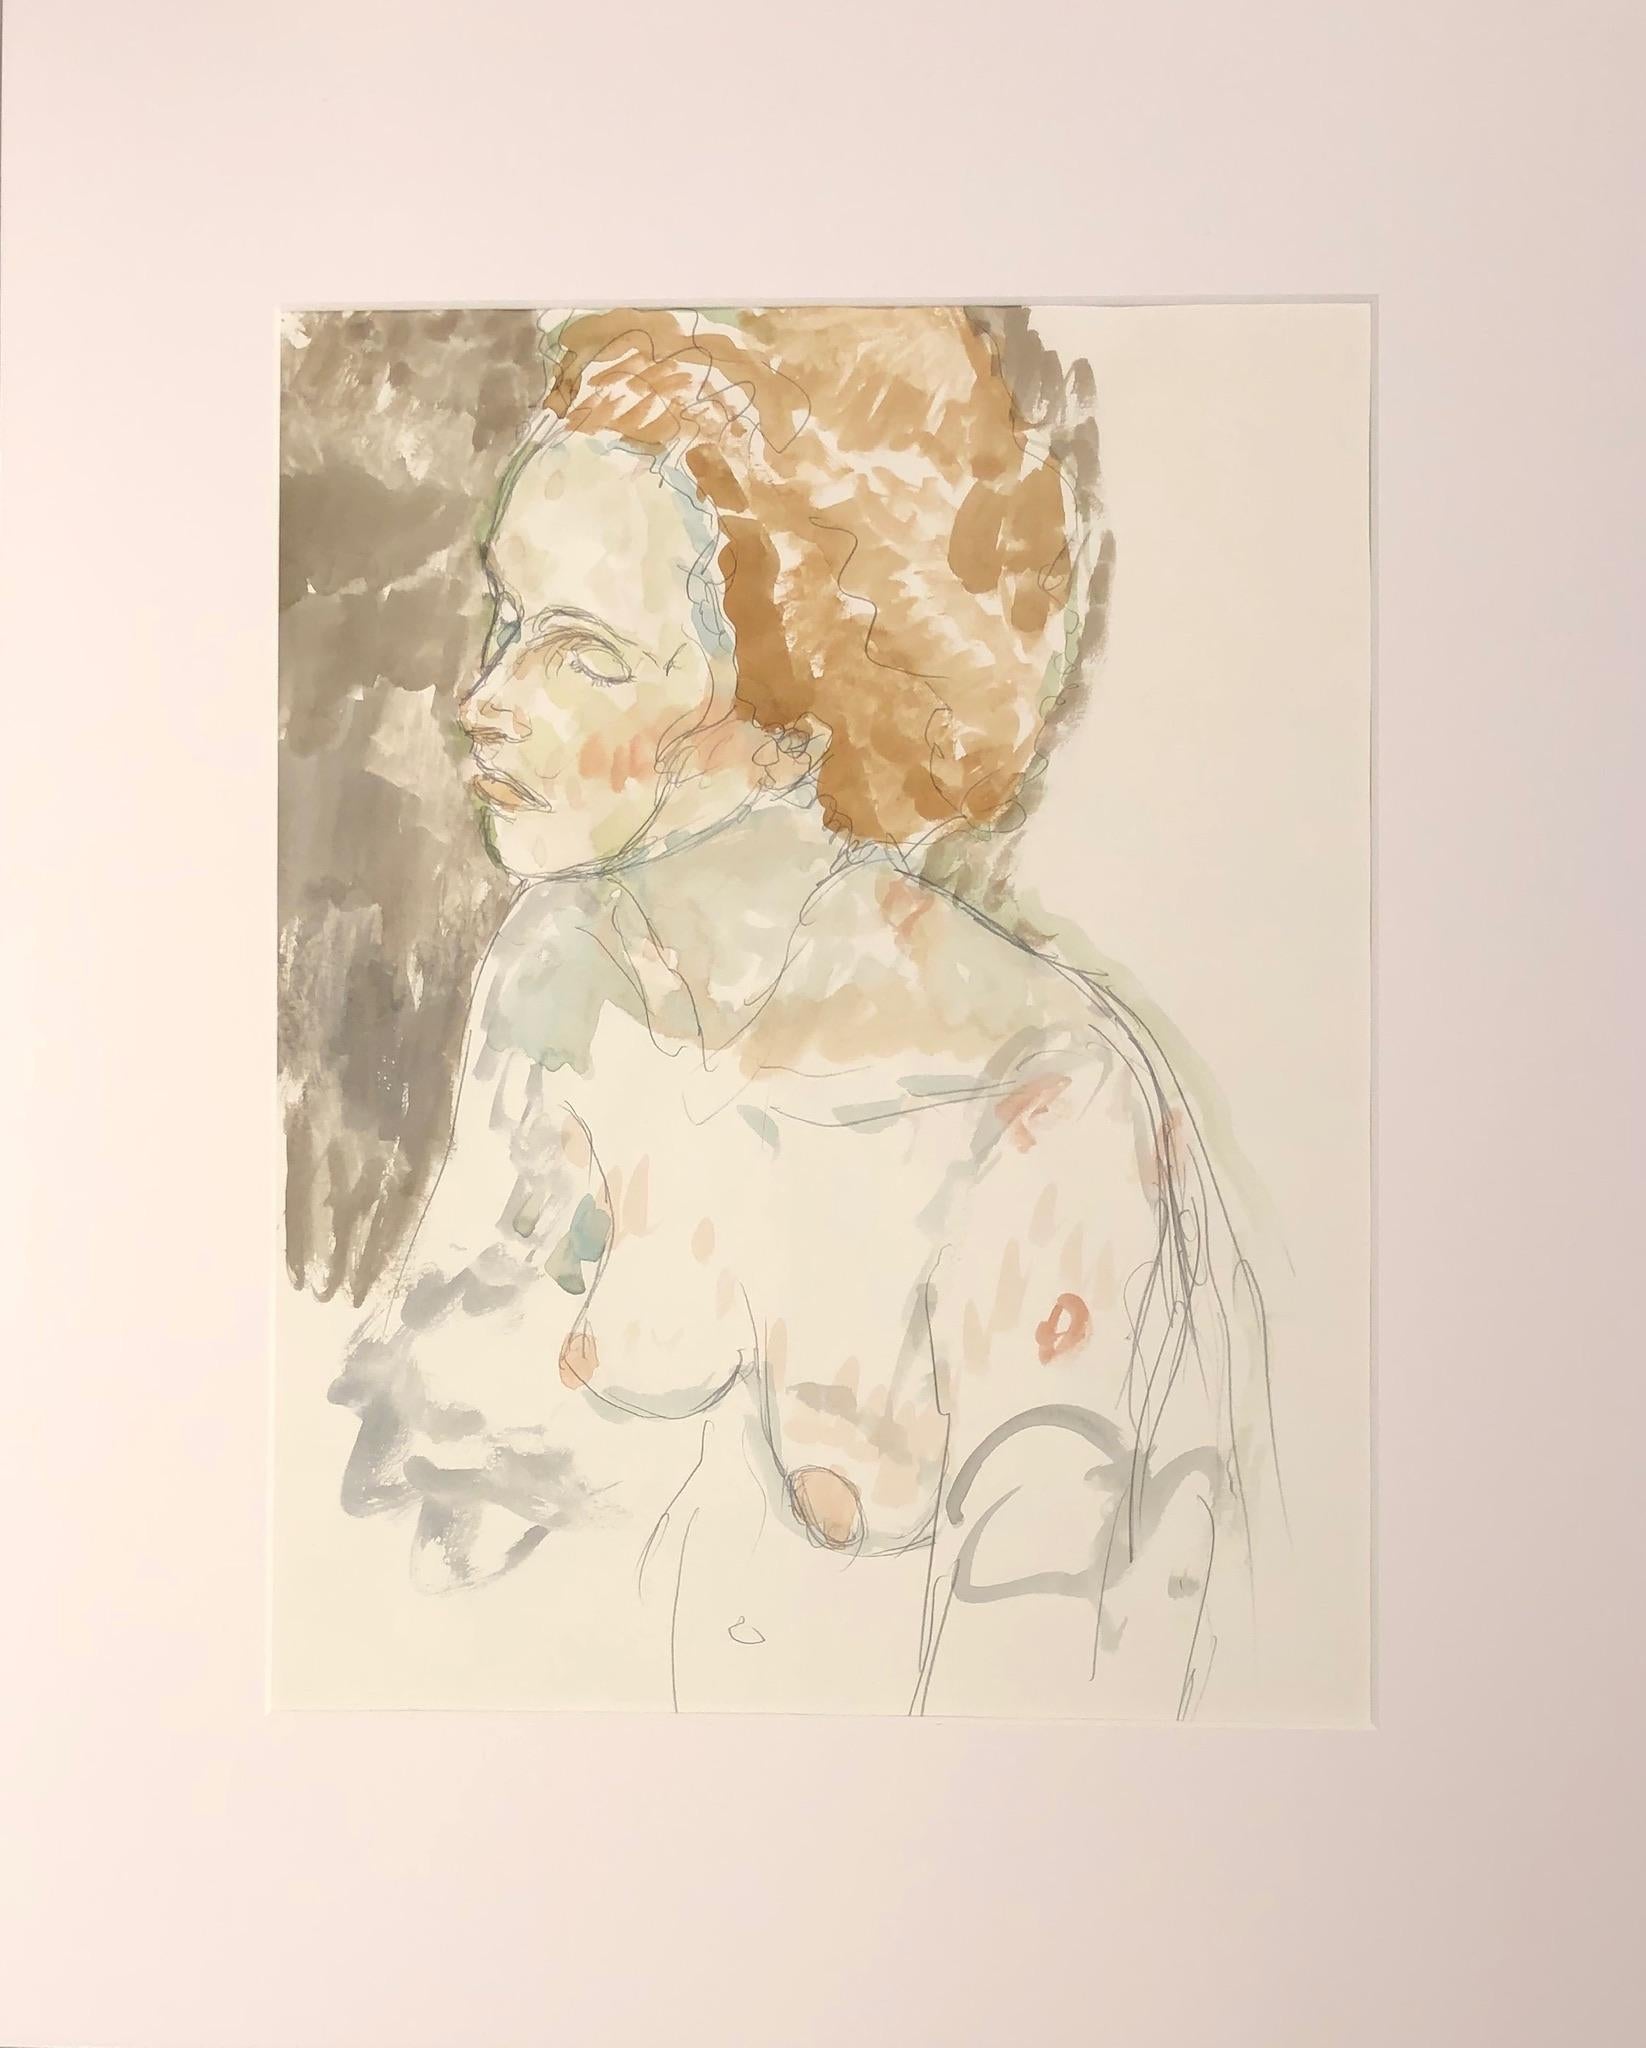 Torse de femme nue, aquarelle et graphite dans des tons terreux sourds - Art de Eduardo Alvarado